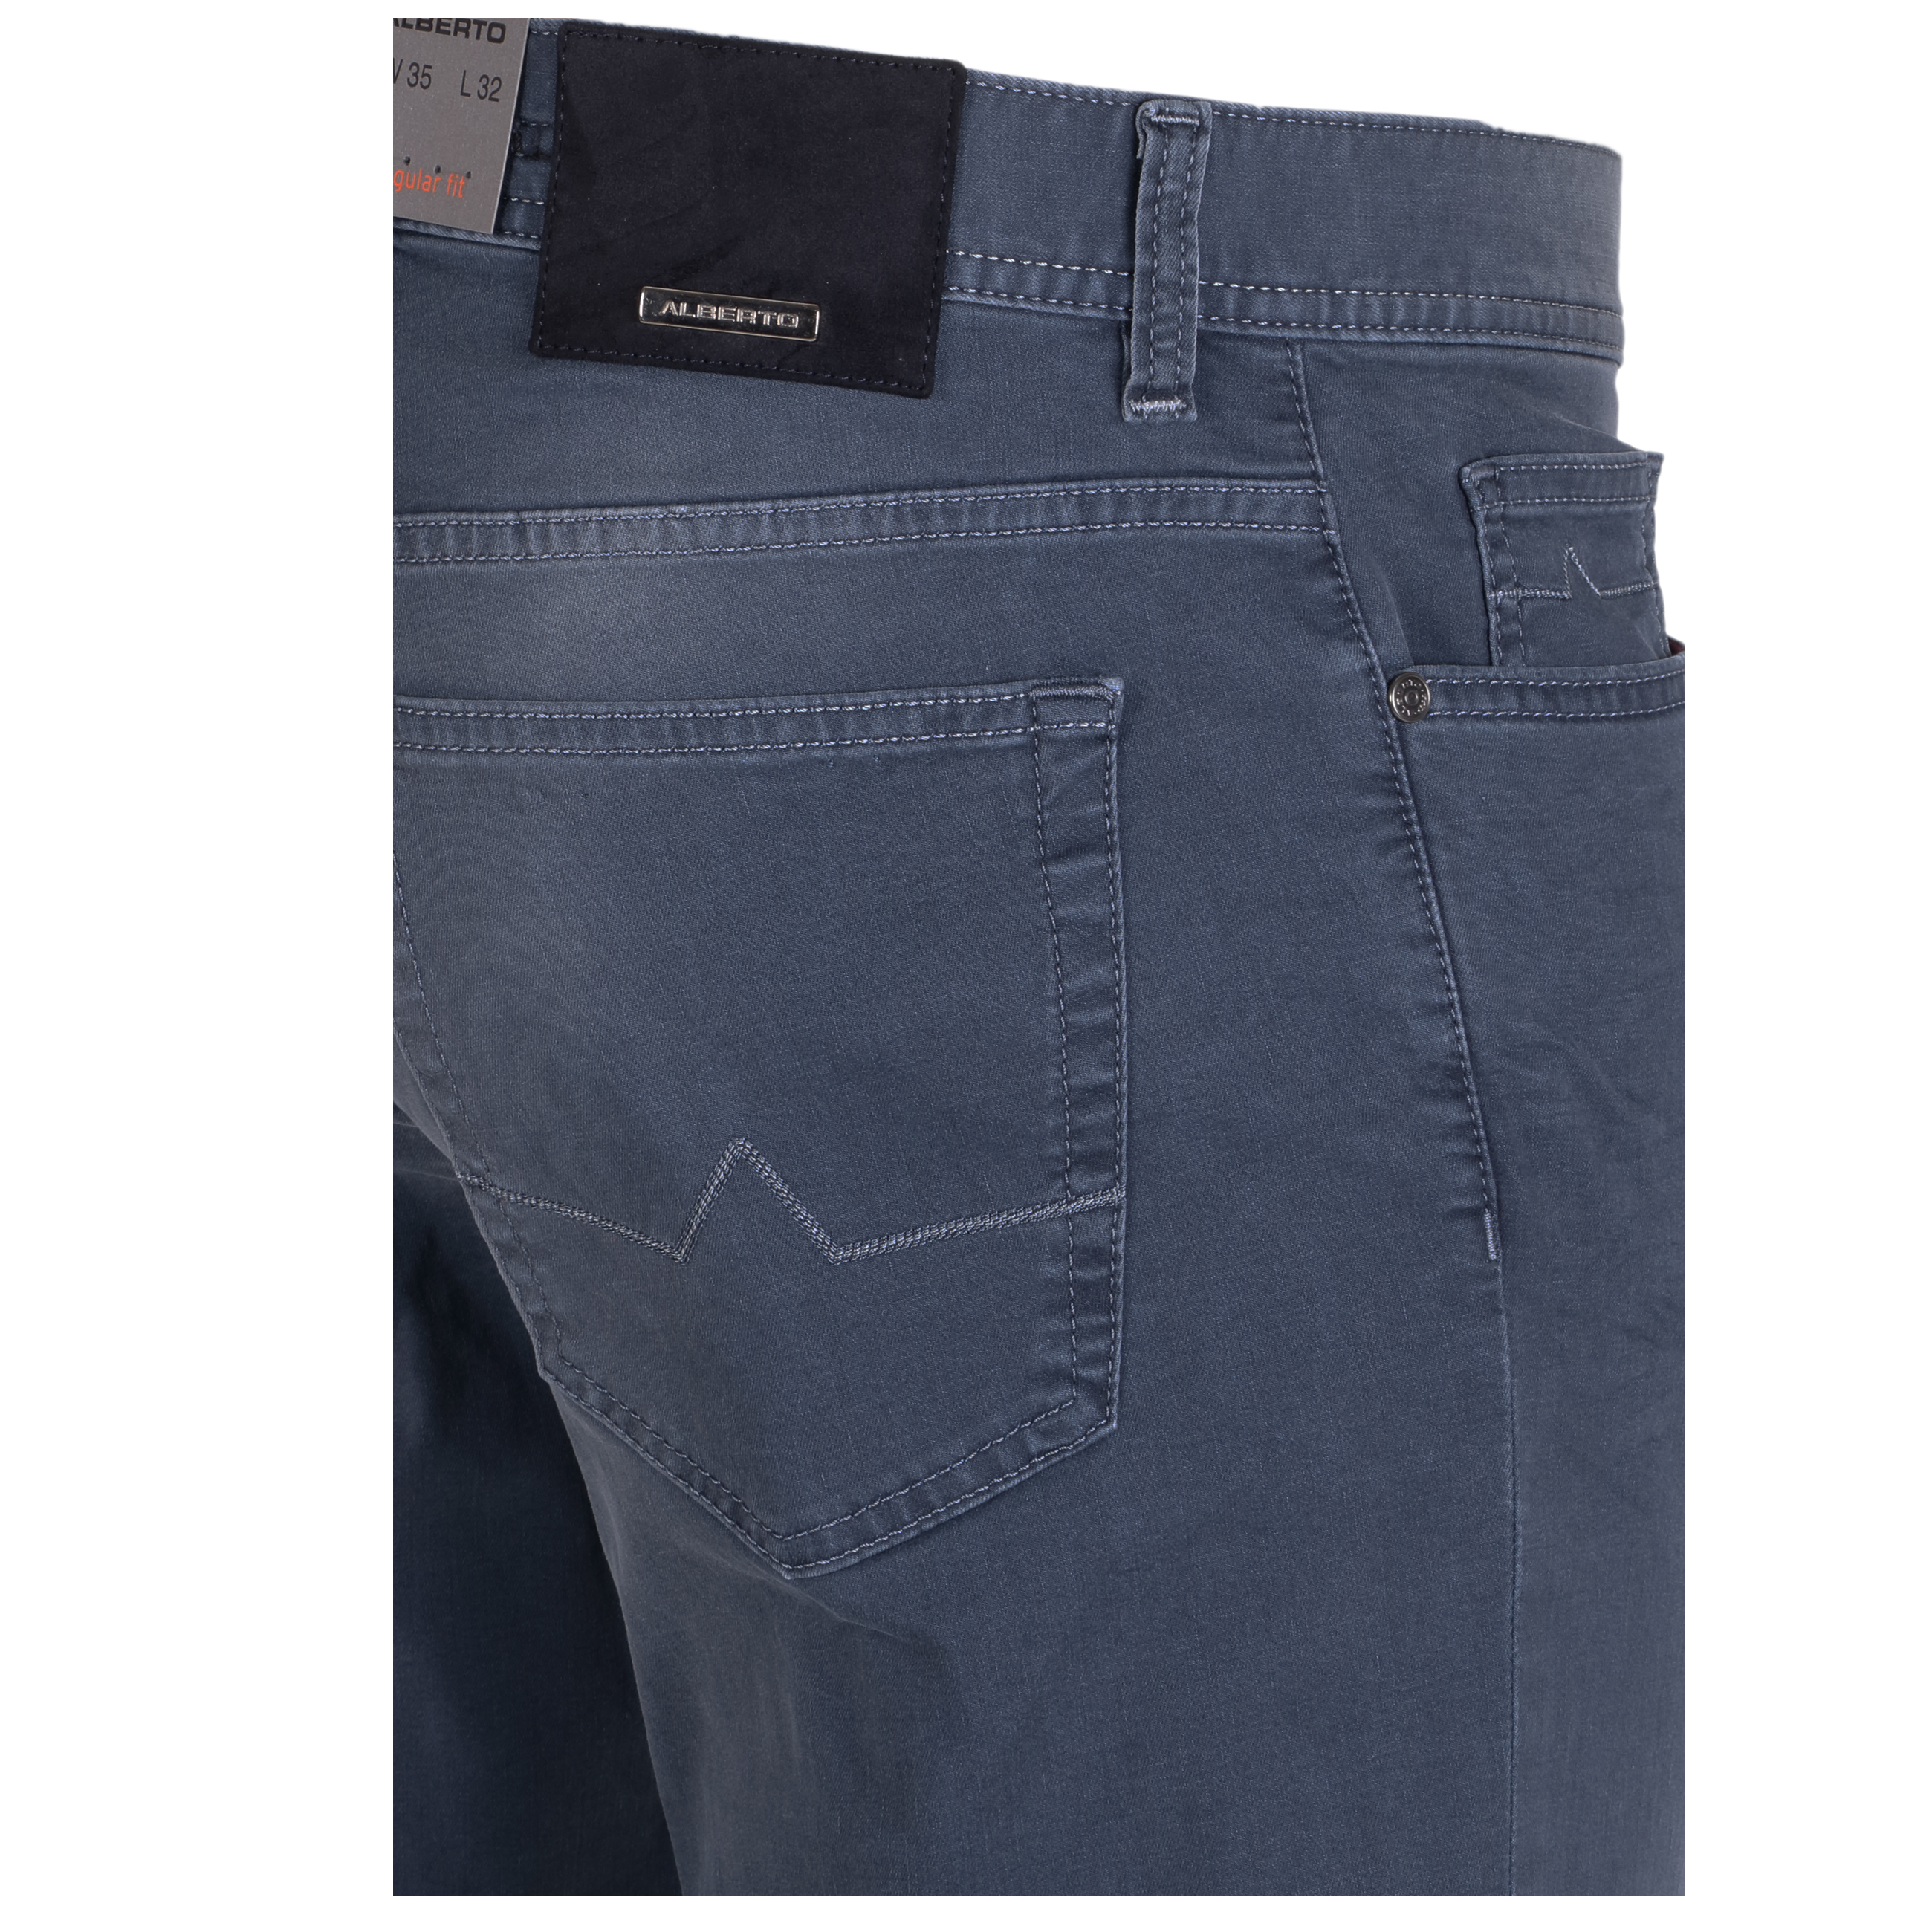 Alberto Jeans Pipe regular fit leichte Qualität 36/32 grau